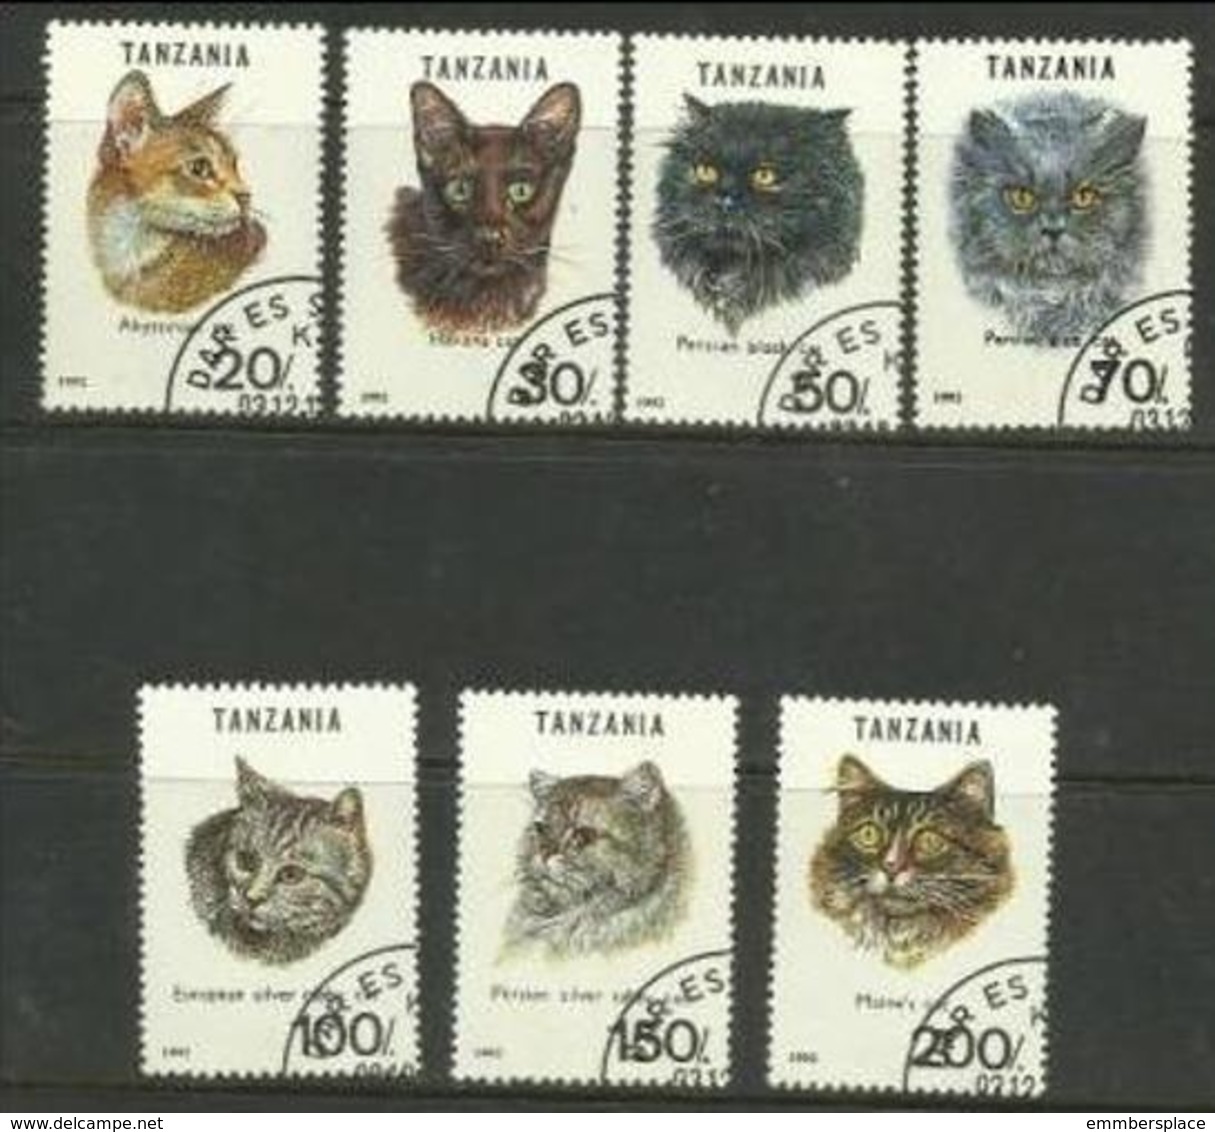 Tanzania - 1992 Cats  CTO   SG 1447-53  Sc 967a-g - Tanzania (1964-...)